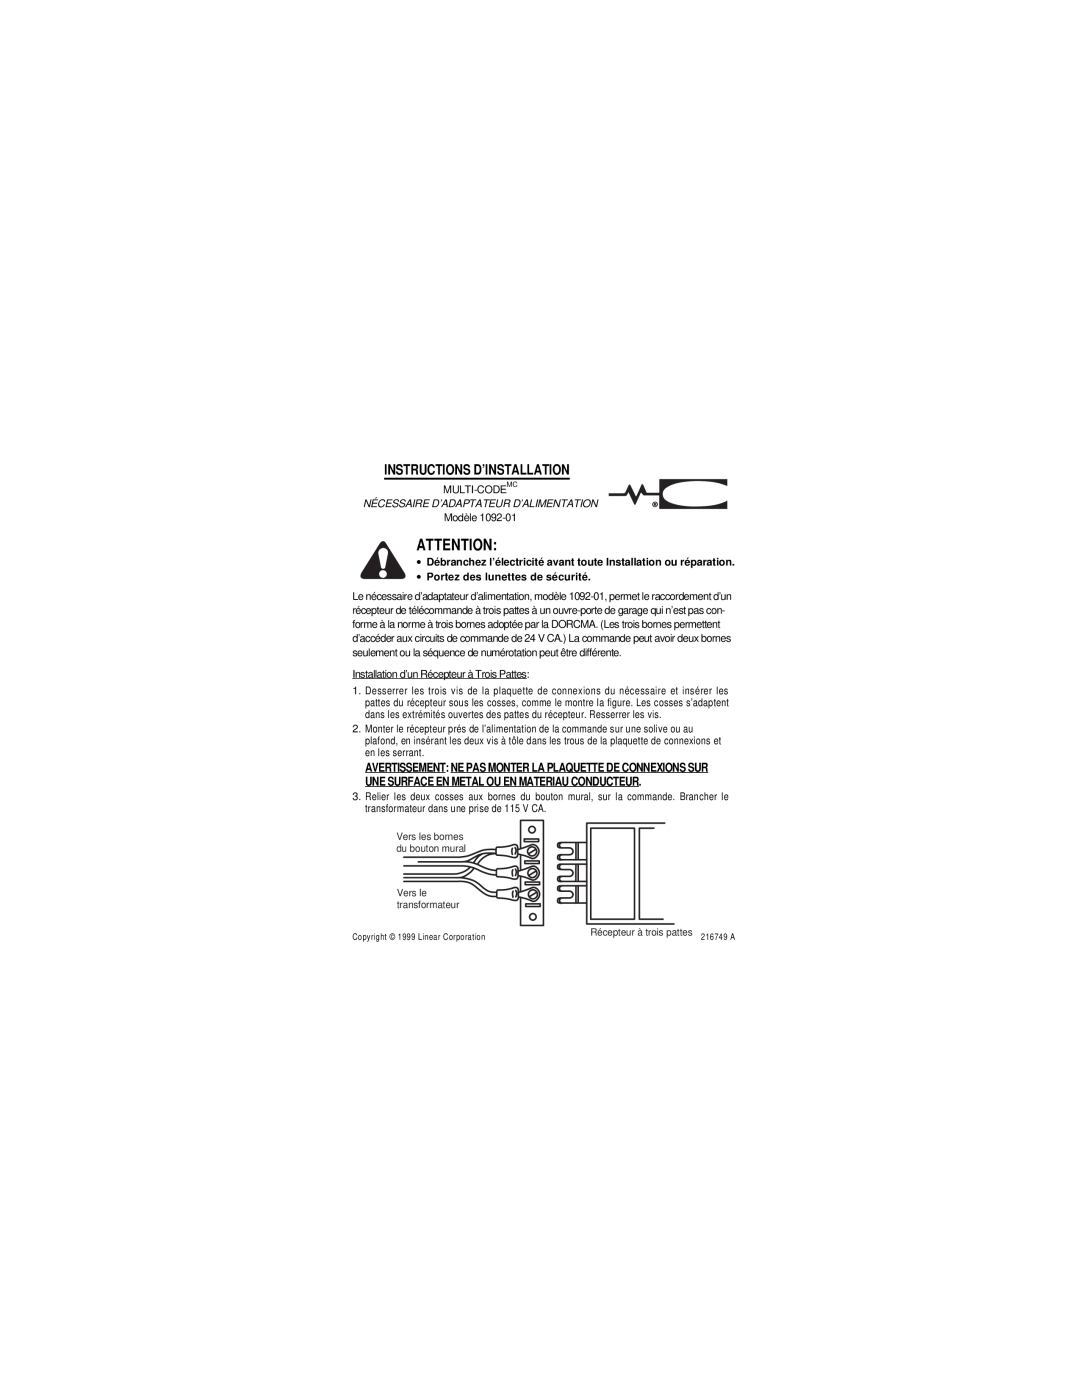 Linear 1092-01 Instructions D’Installation, Nécessaire D’Adaptateur D’Alimentation, ∙ Portez des lunettes de sécurité 